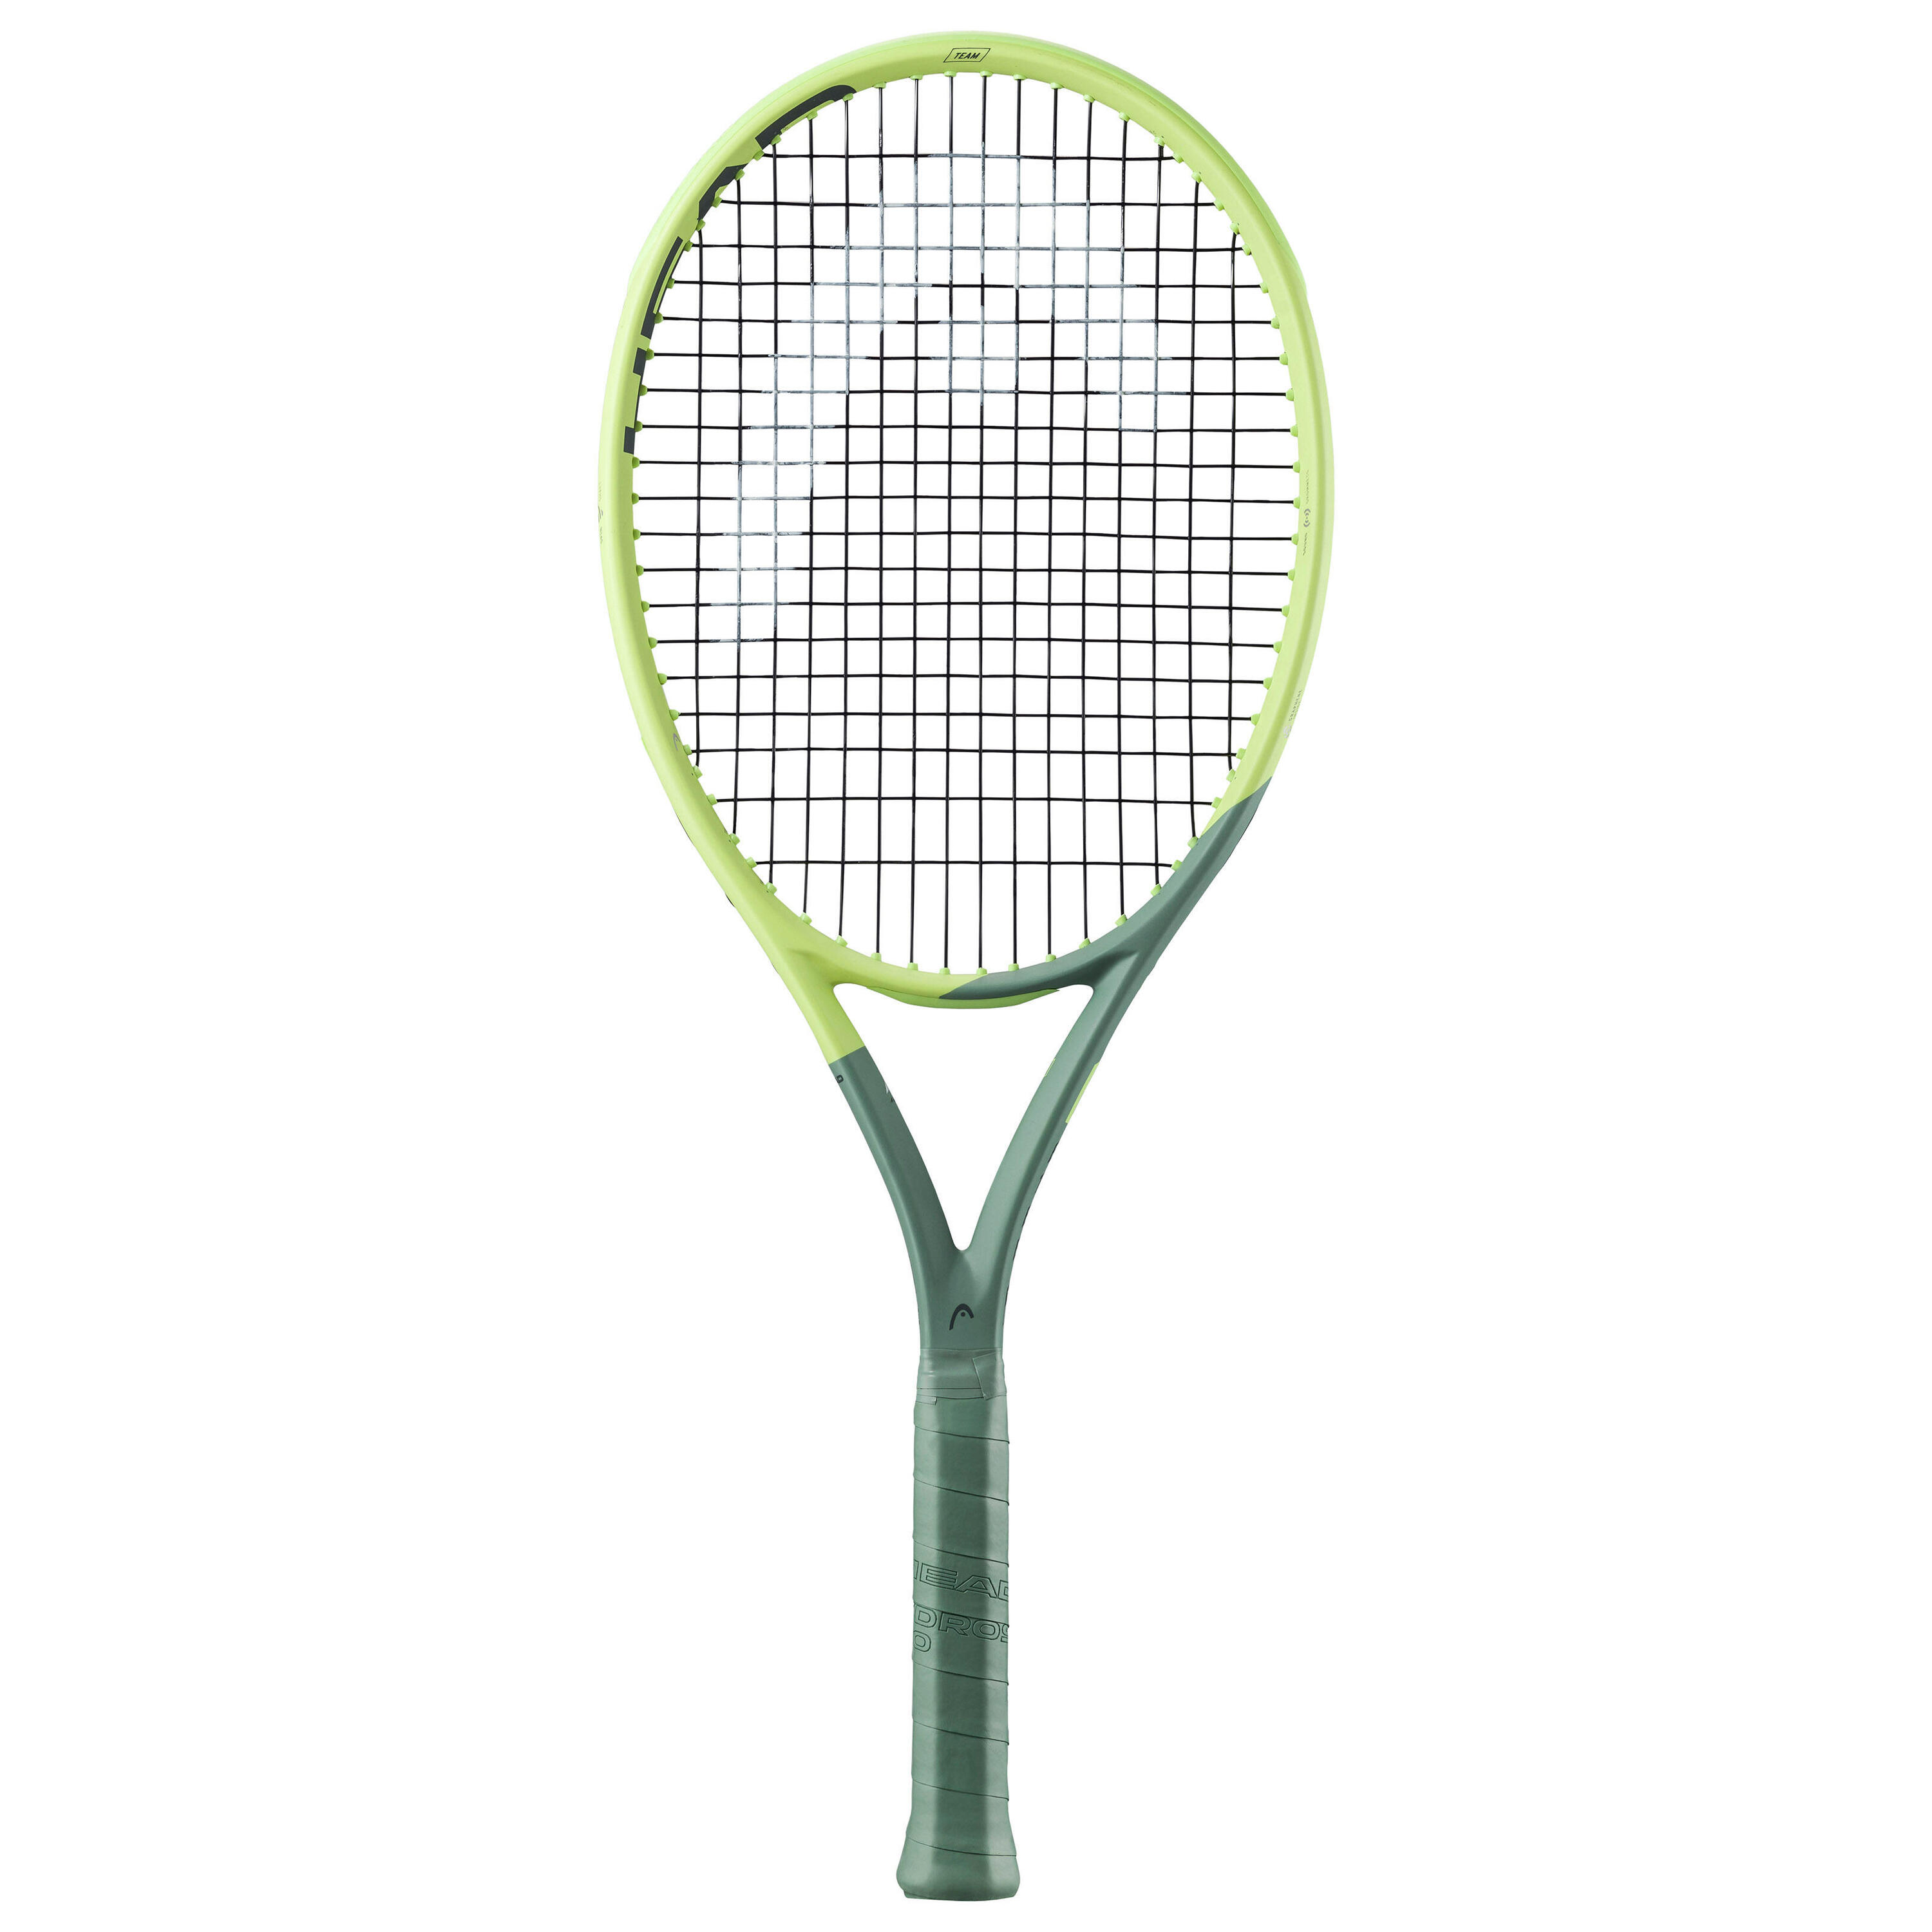 Теннисная ракетка Head - Auxetic Extreme Team Yellow 275 г, зеленый лайм/серо-зеленый